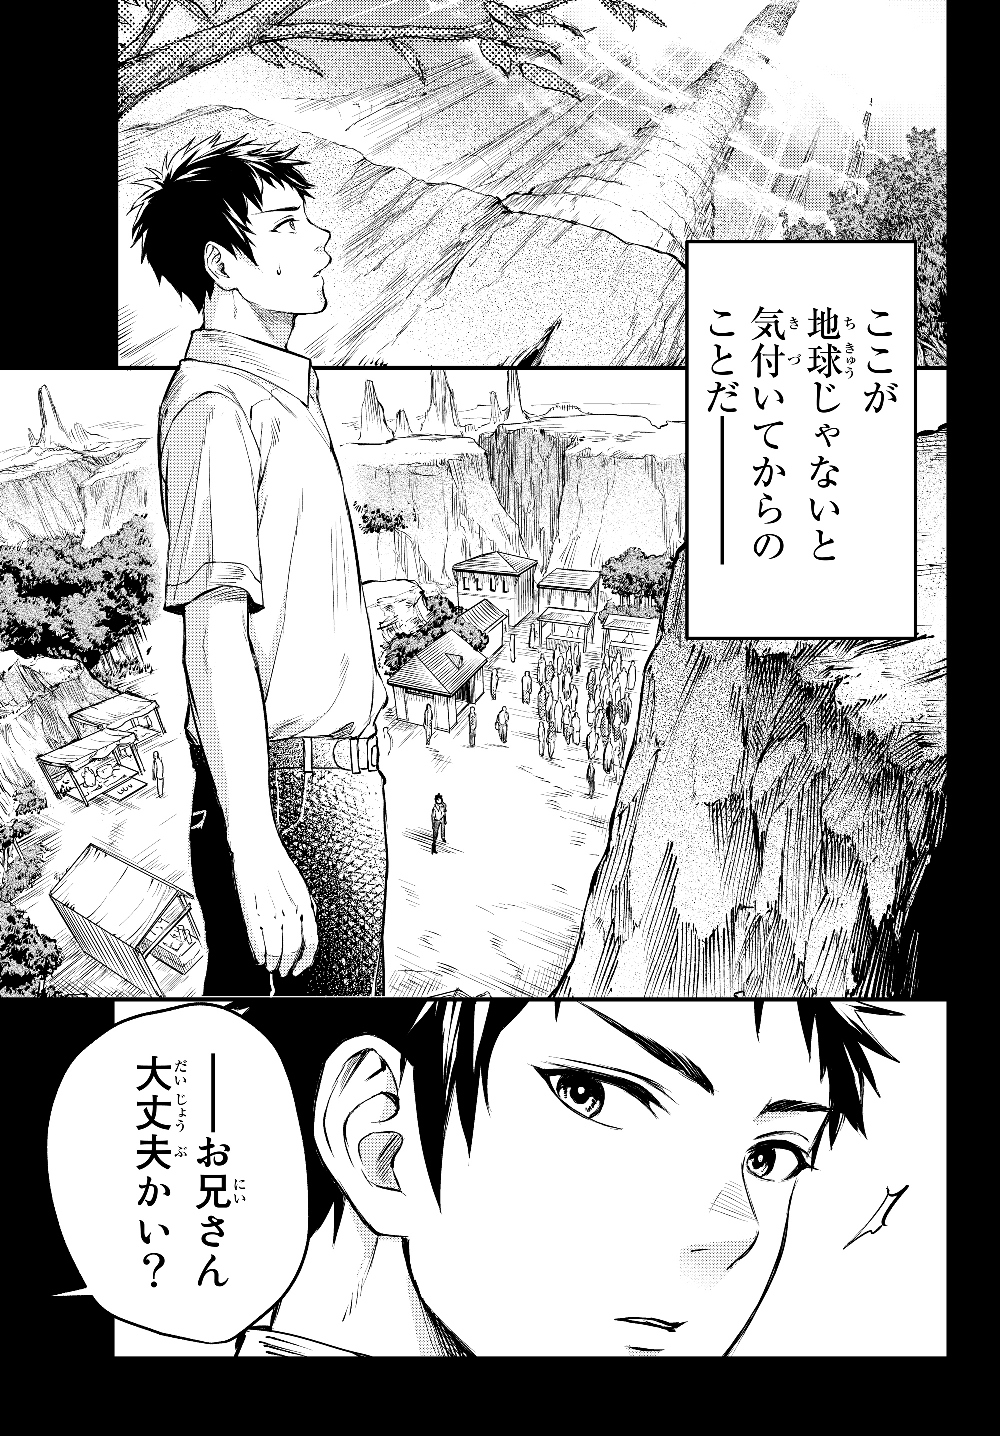 スコップ・スコッパー・スコッペストwith魔眼王 第2話 - Page 3